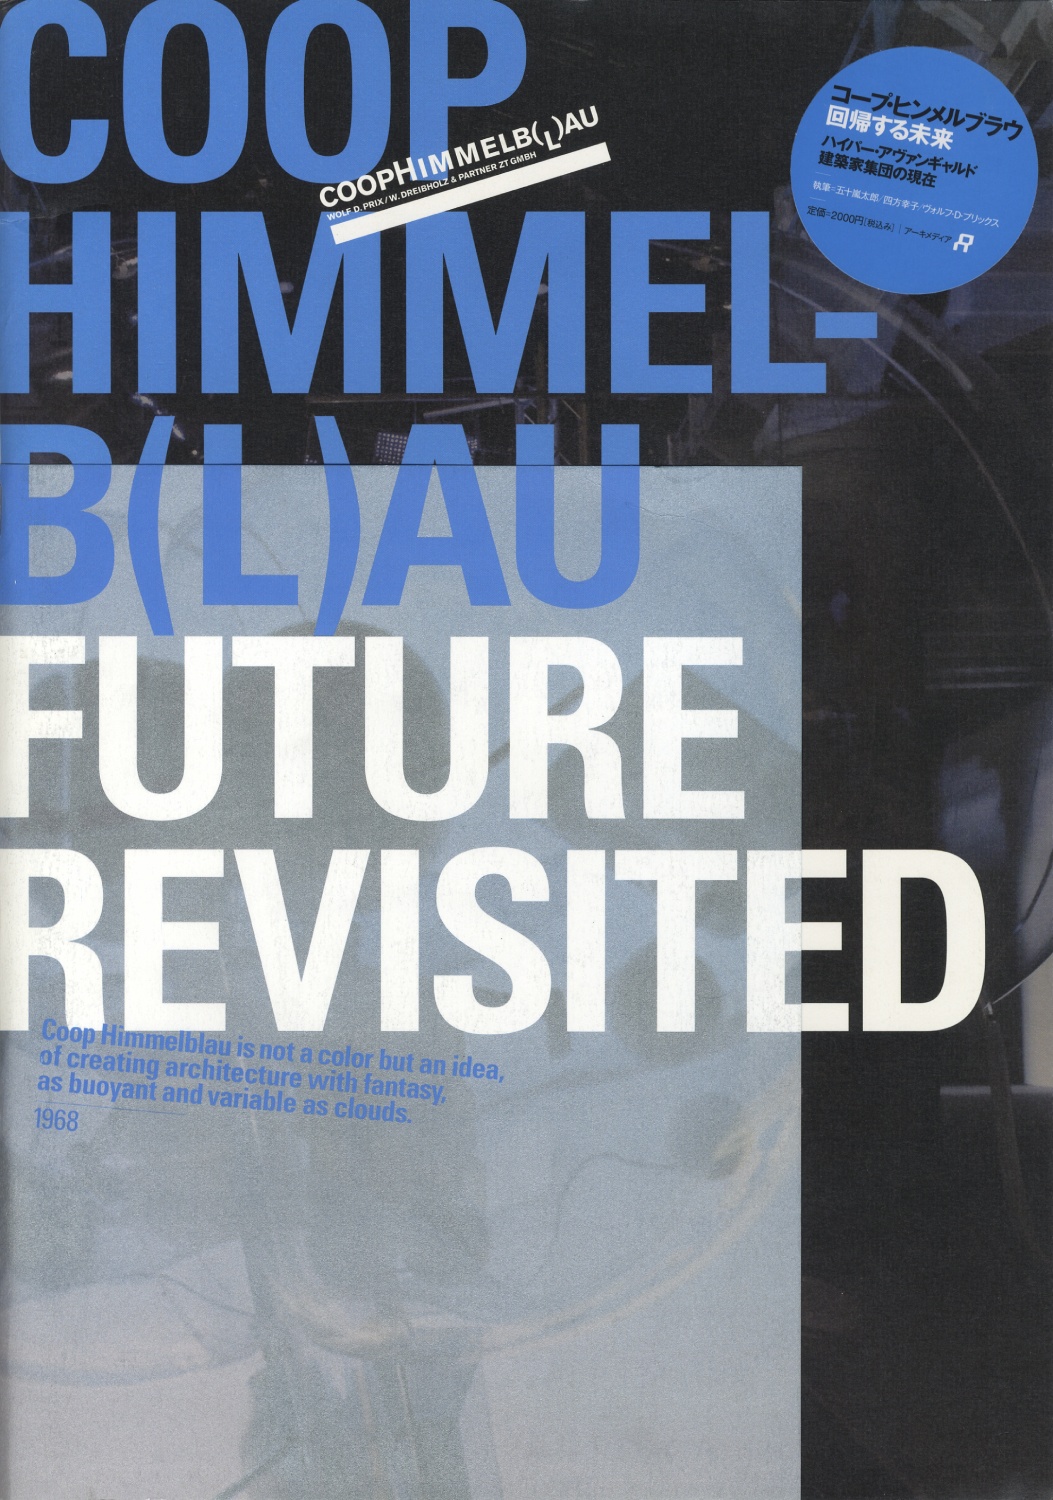 コープ・ヒンメルブラウ：回帰する未来　COOP HIMMELB(L)AU: FUTURE REVISITED［image1］